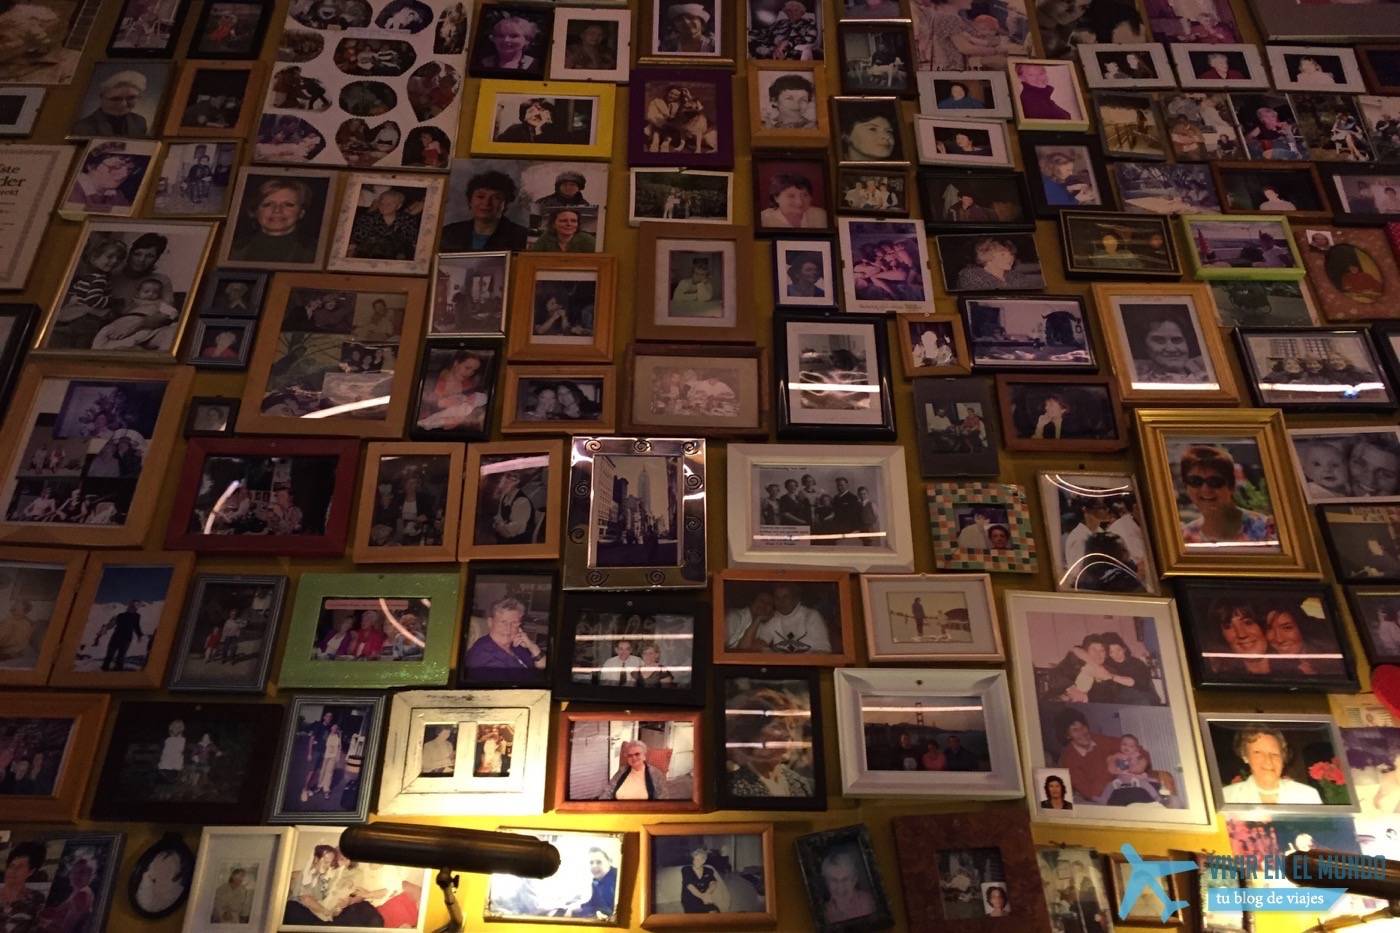 Moeders y sus paredes con las fotos de miles de madres